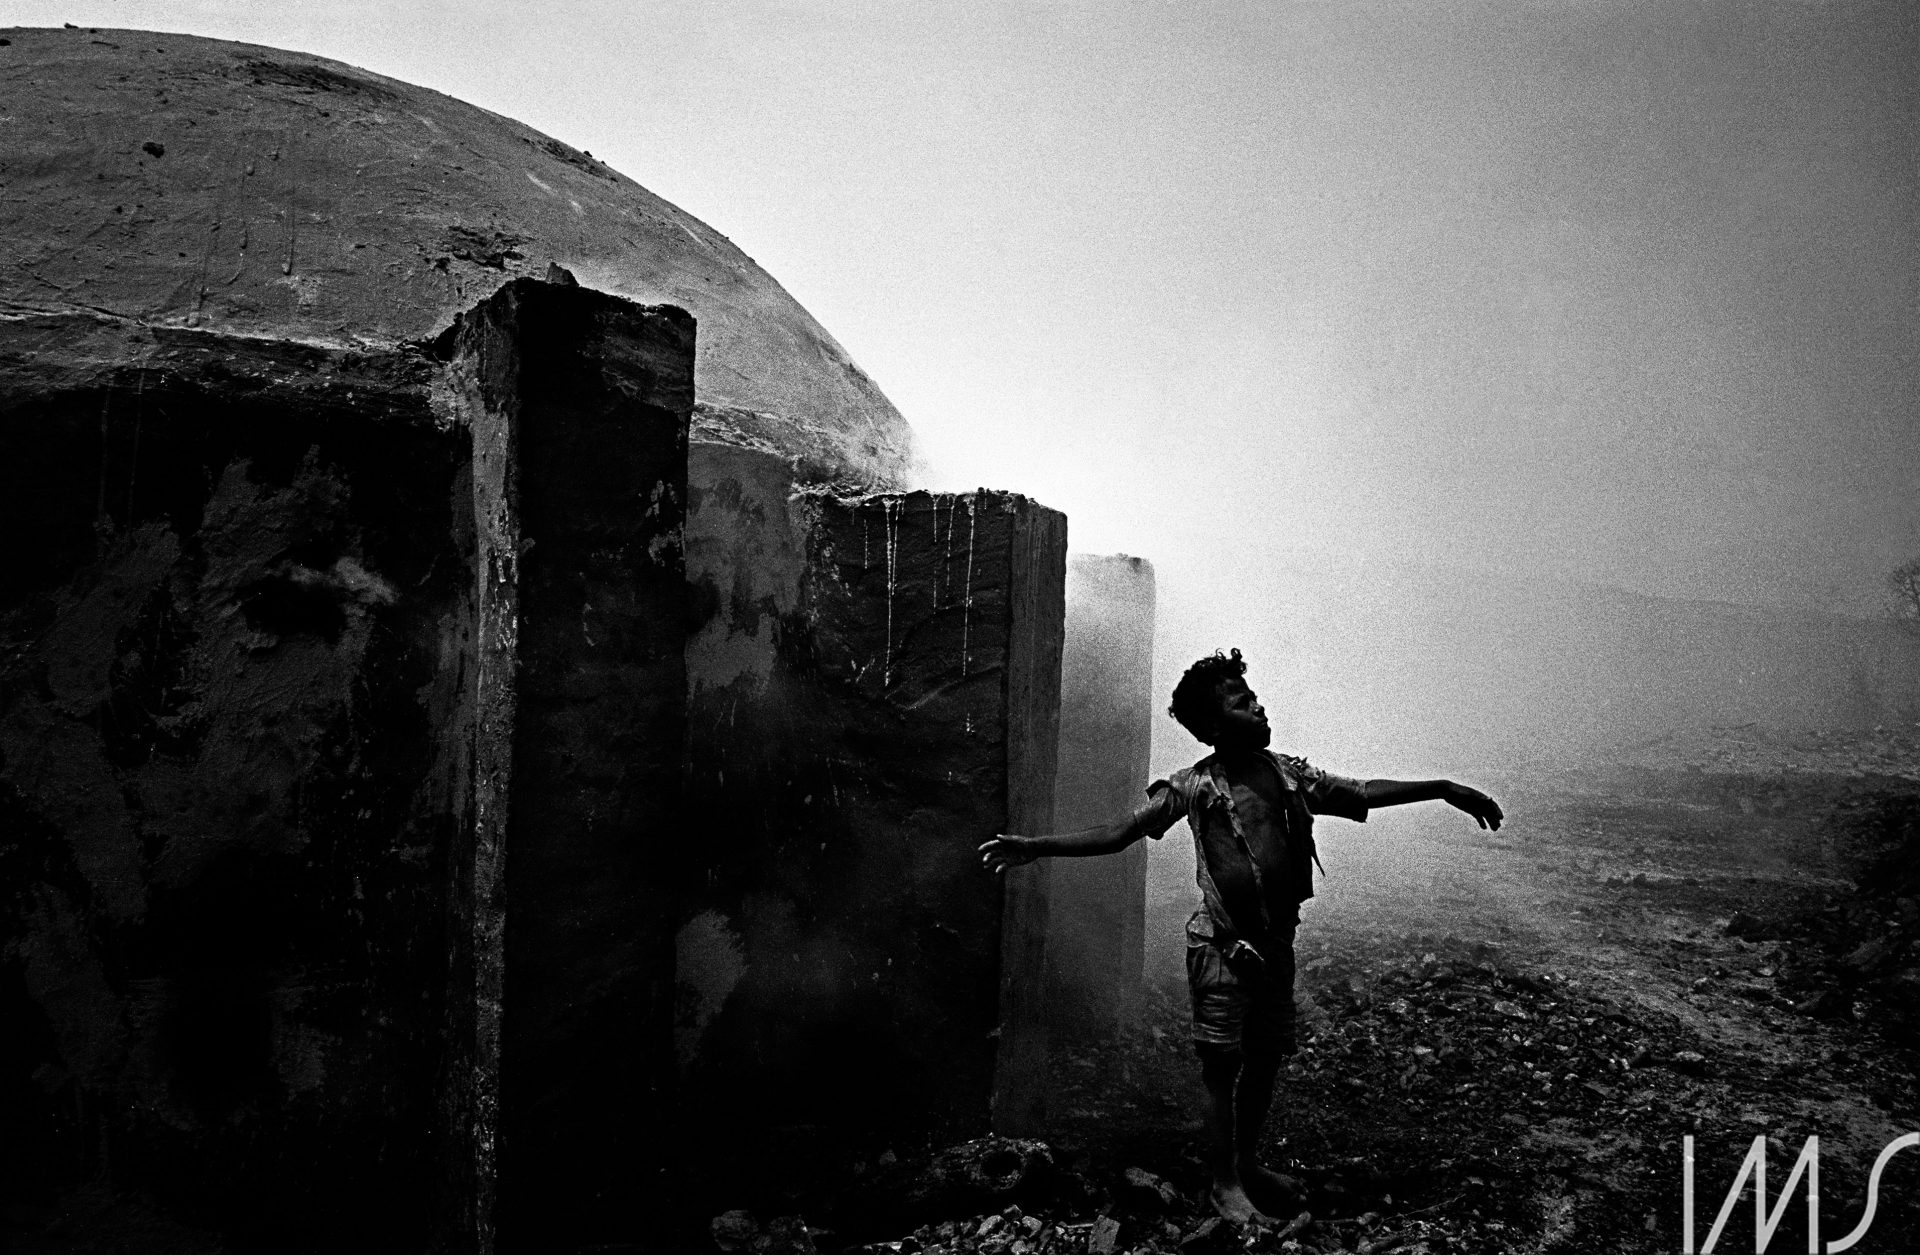 Menino perto de forno para queima de carvão de lenha, Lassance, MG, c. 1966. Foto de Maureen Bisilliat / Acervo IMS